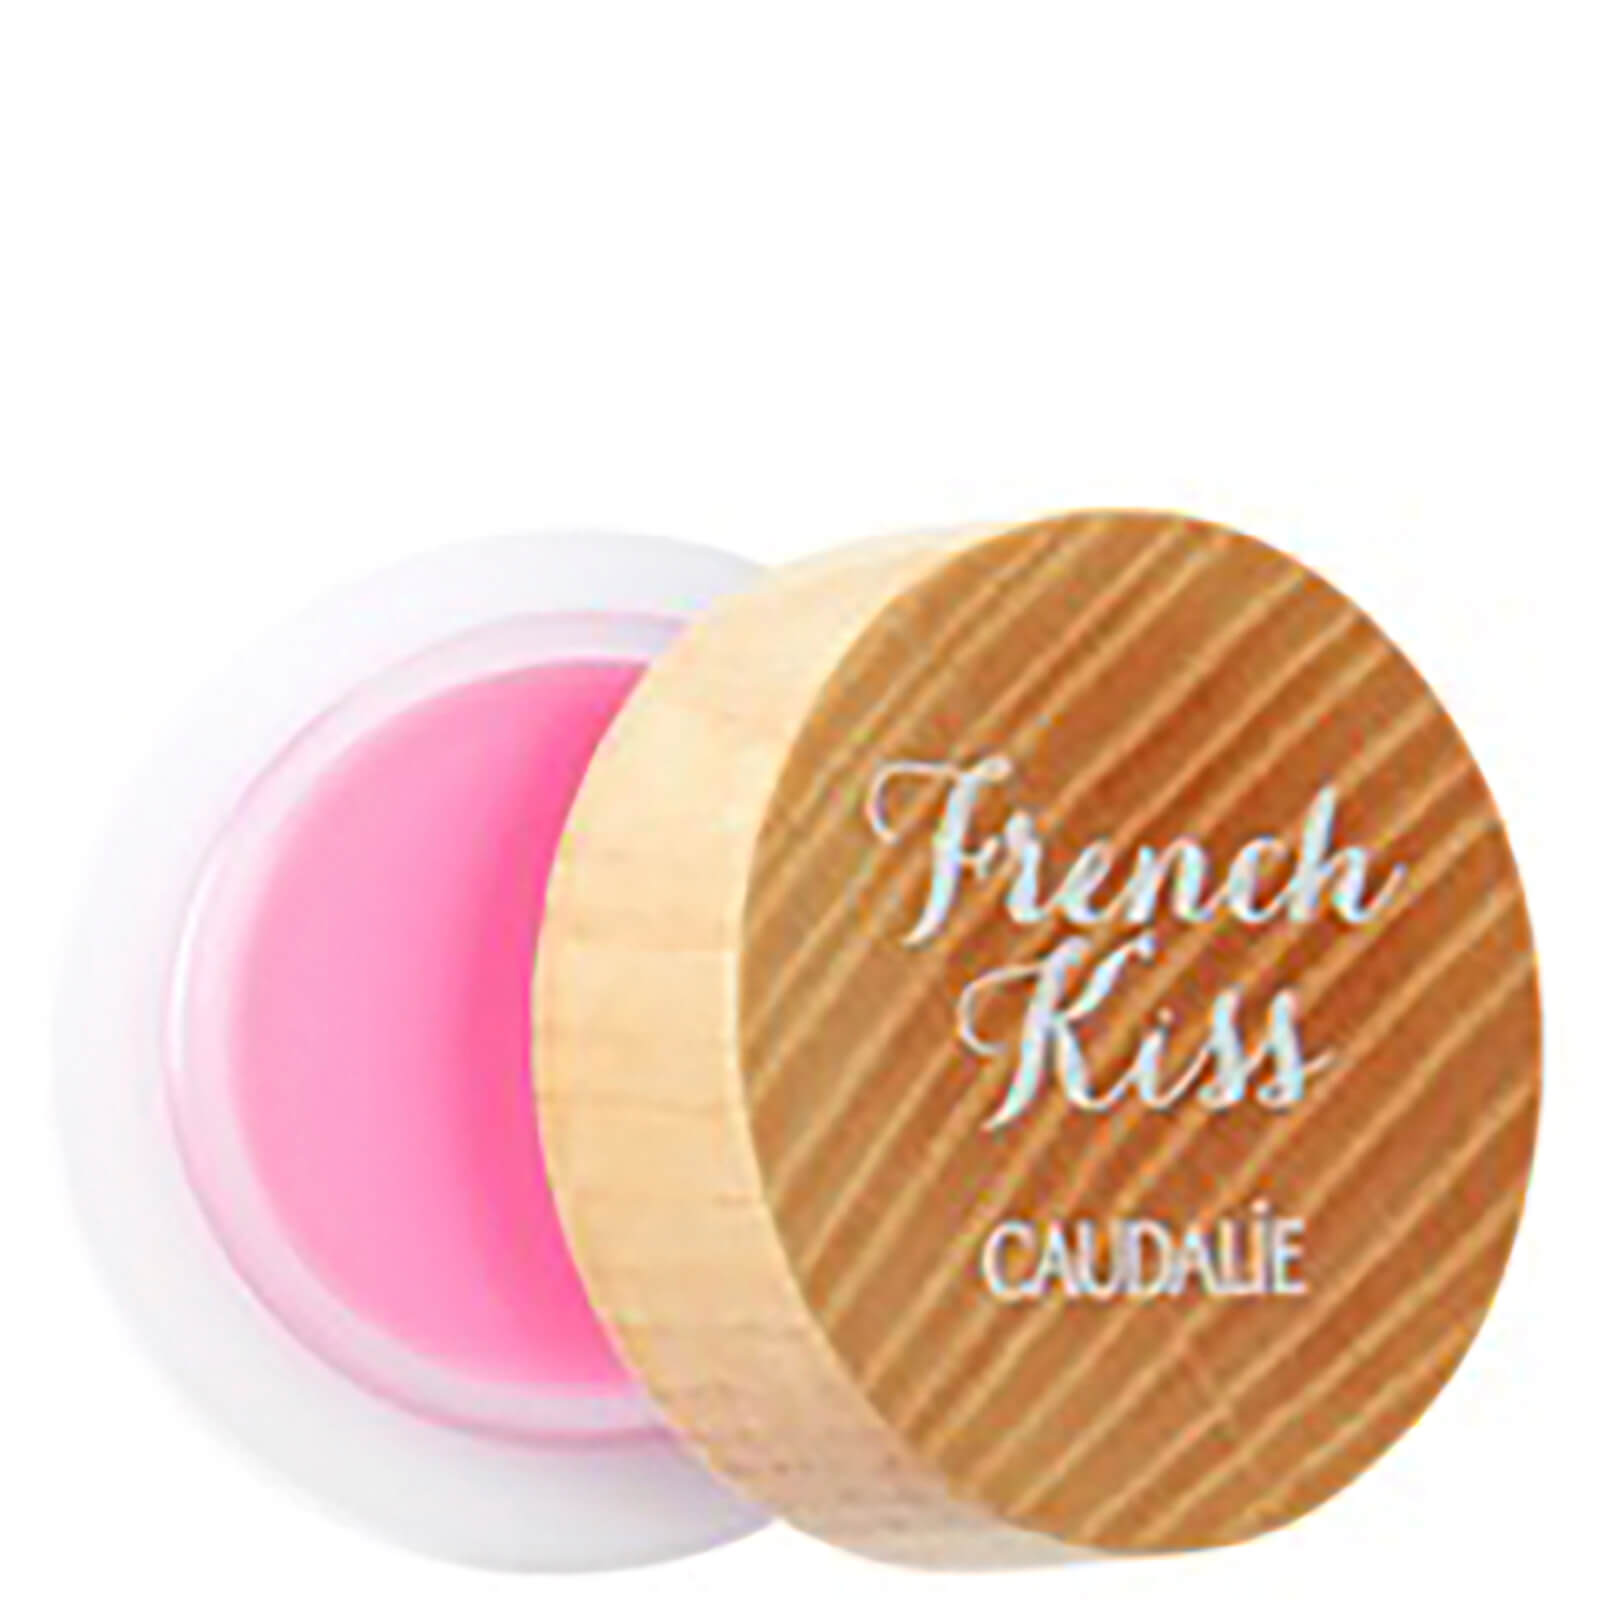 Bálsamo labial French Kiss Tinted de Caudalie - Innocence